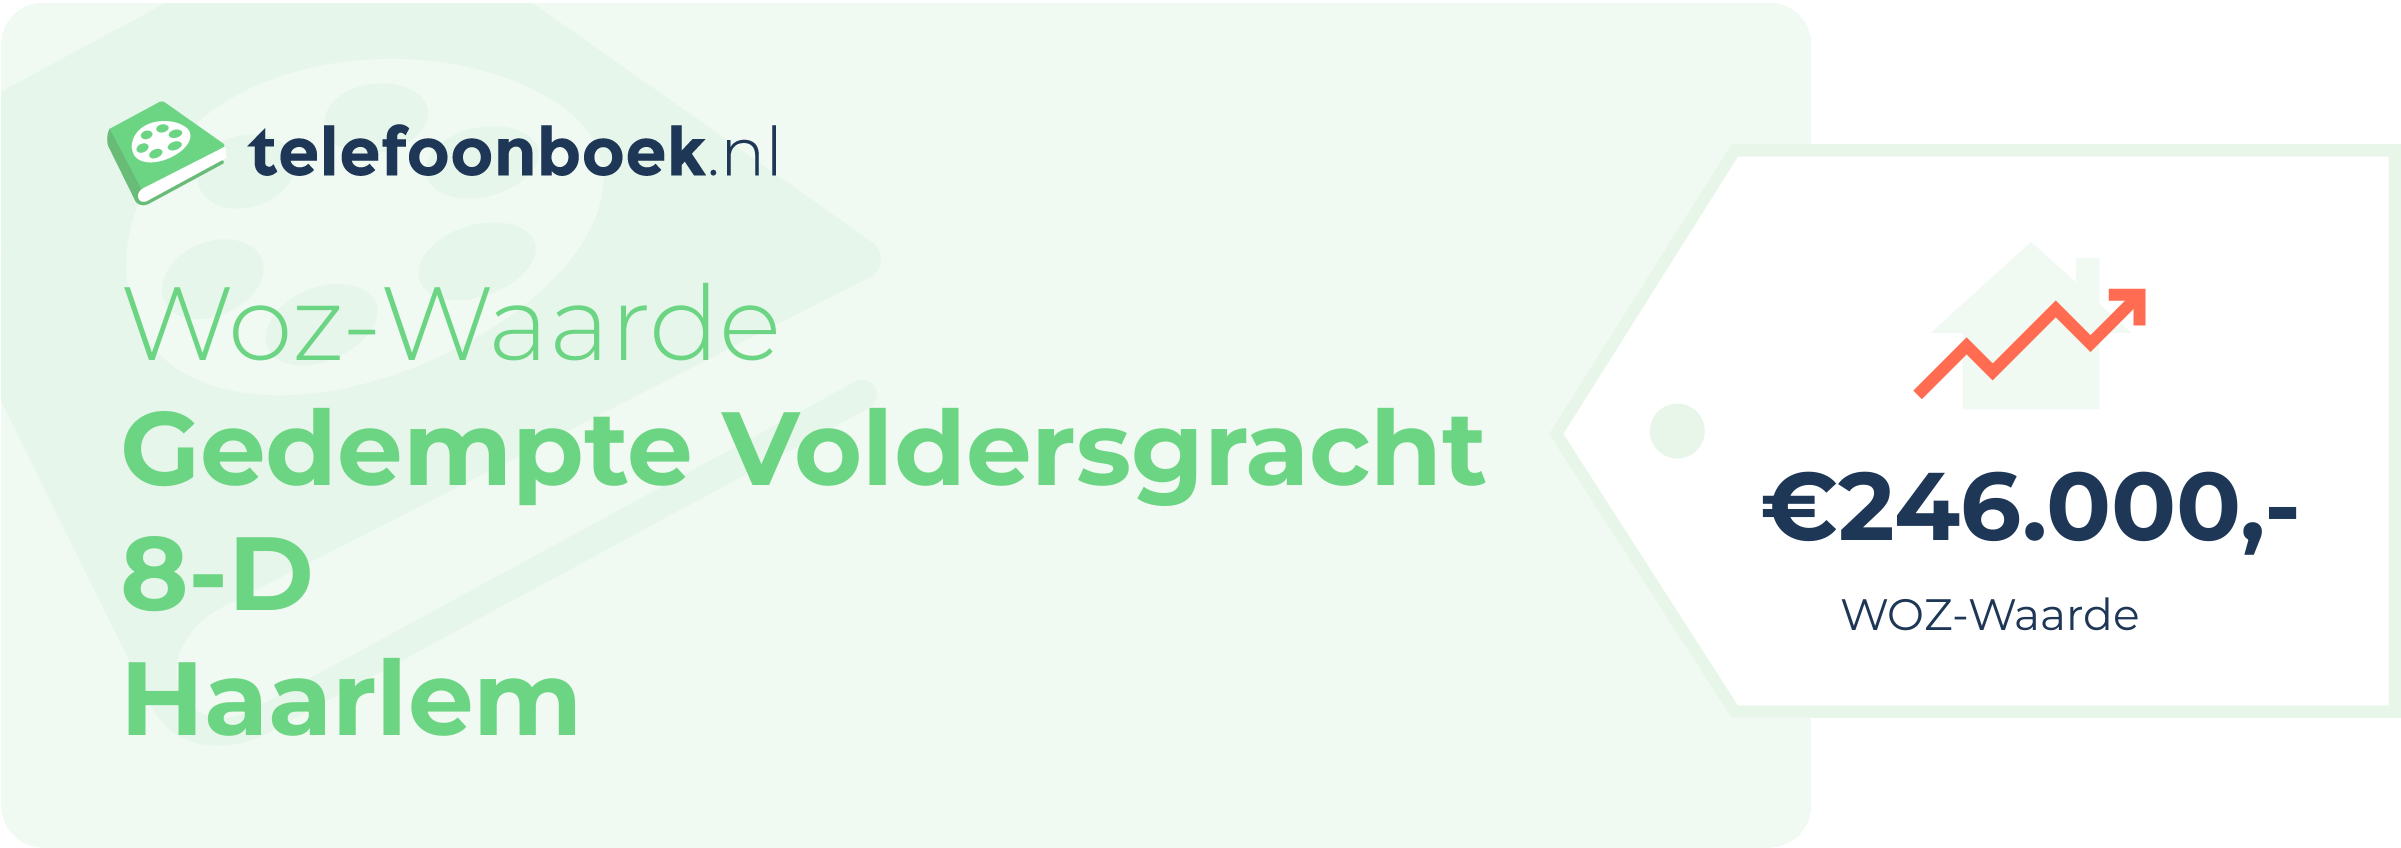 WOZ-waarde Gedempte Voldersgracht 8-D Haarlem